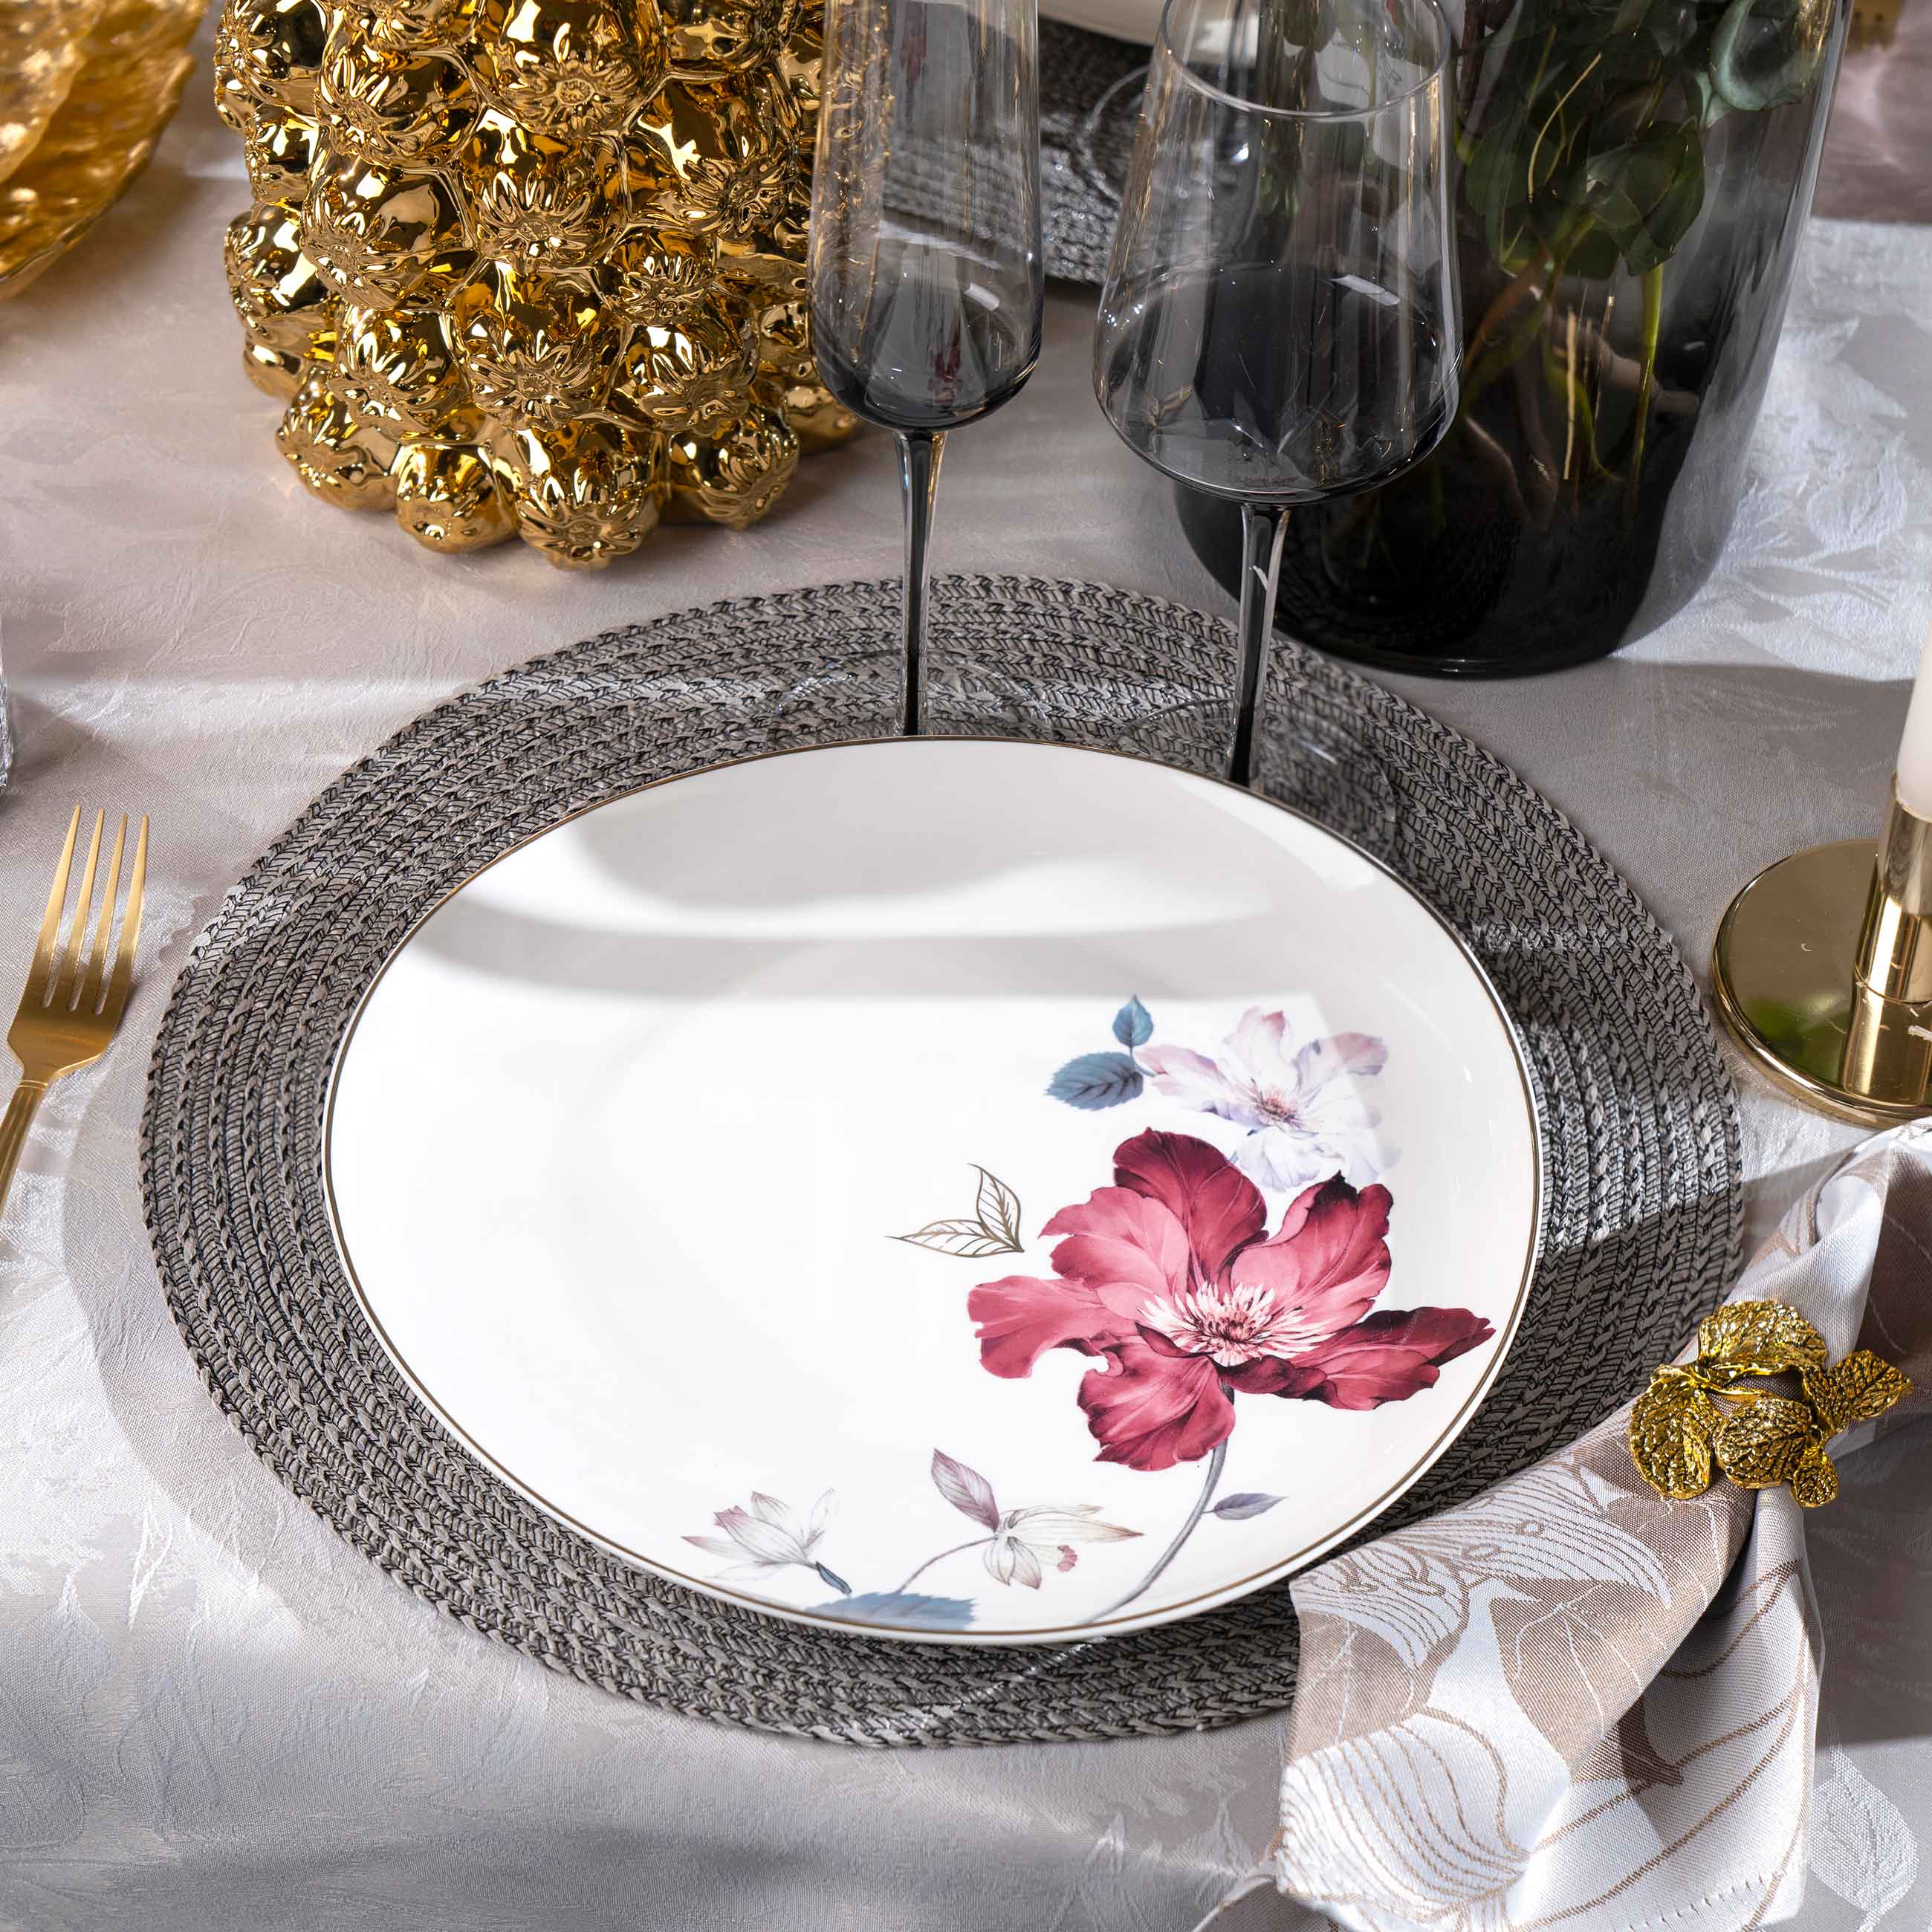 Тарелка обеденная, 28 см, фарфор N, белая, с золотистым кантом, Цветок и листья, Noir